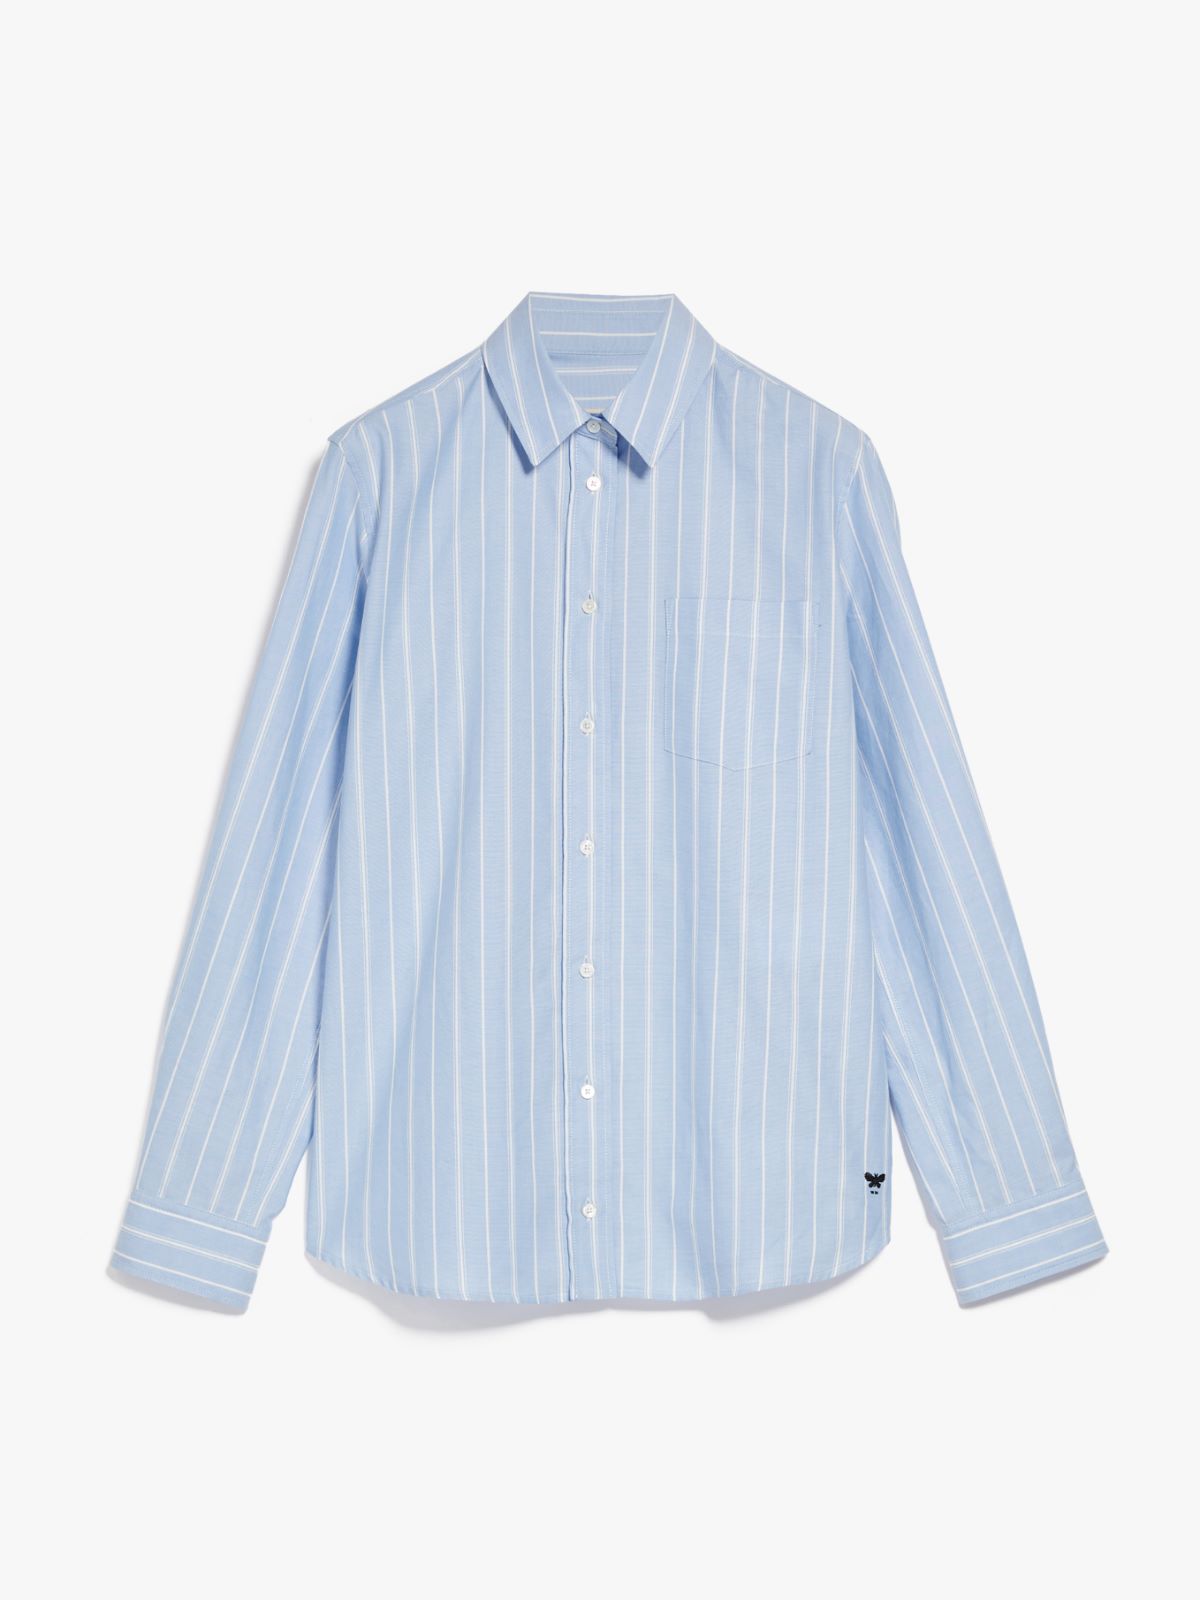 Cotton Oxford shirt - LIGHT BLUE - Weekend Max Mara - 6